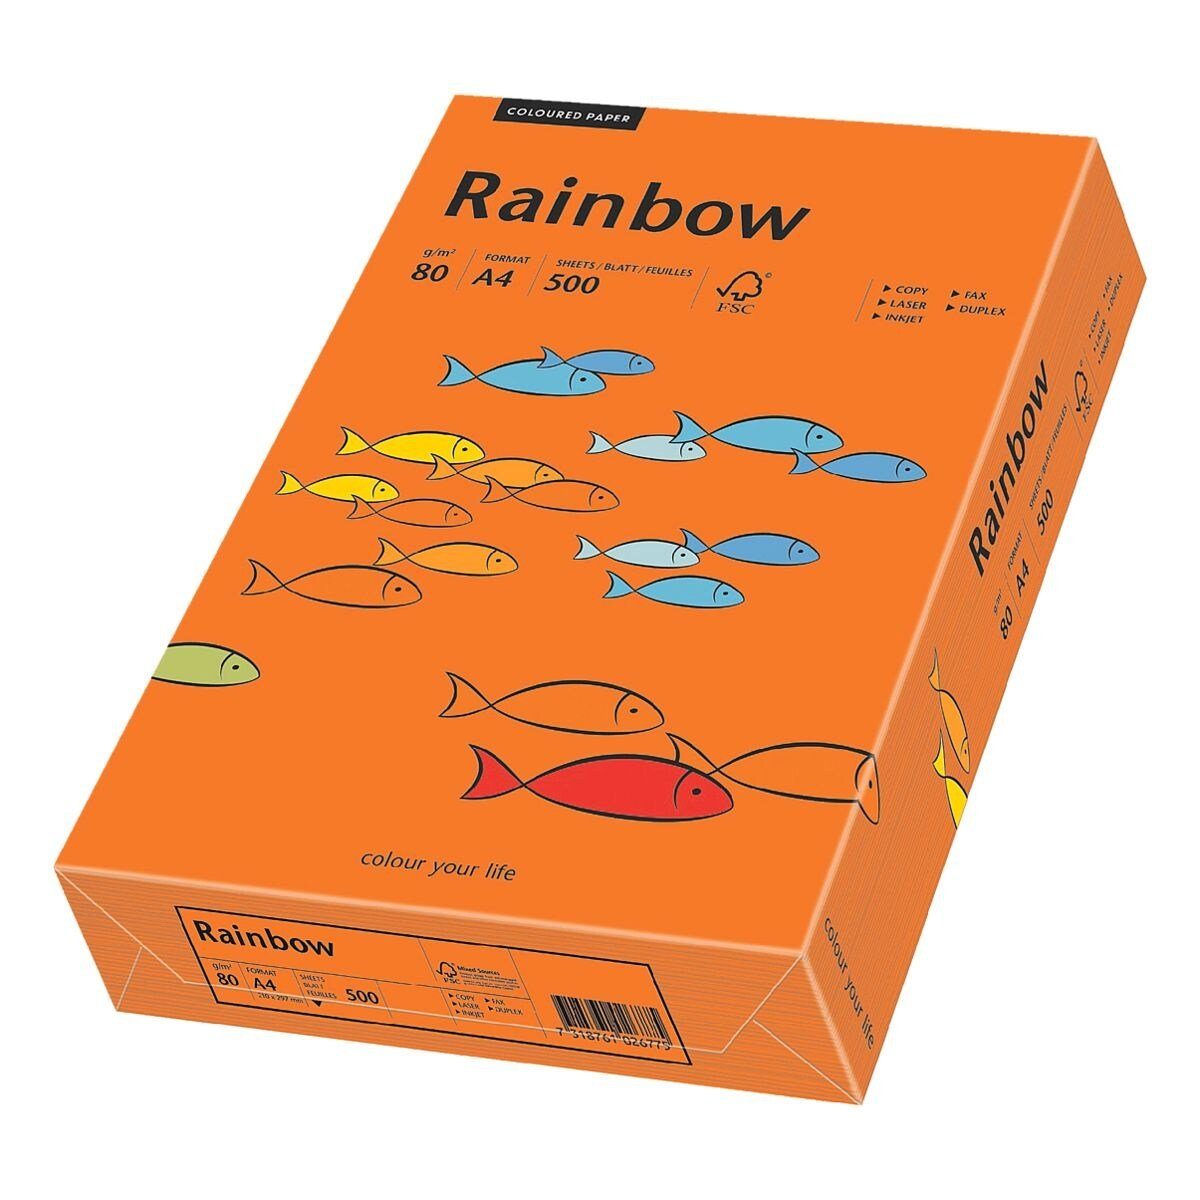 Kopierpapier und Inapa tecno DIN Format Rainbow, g/m² intensivorange A5, 80 Drucker- Intensivfarben,